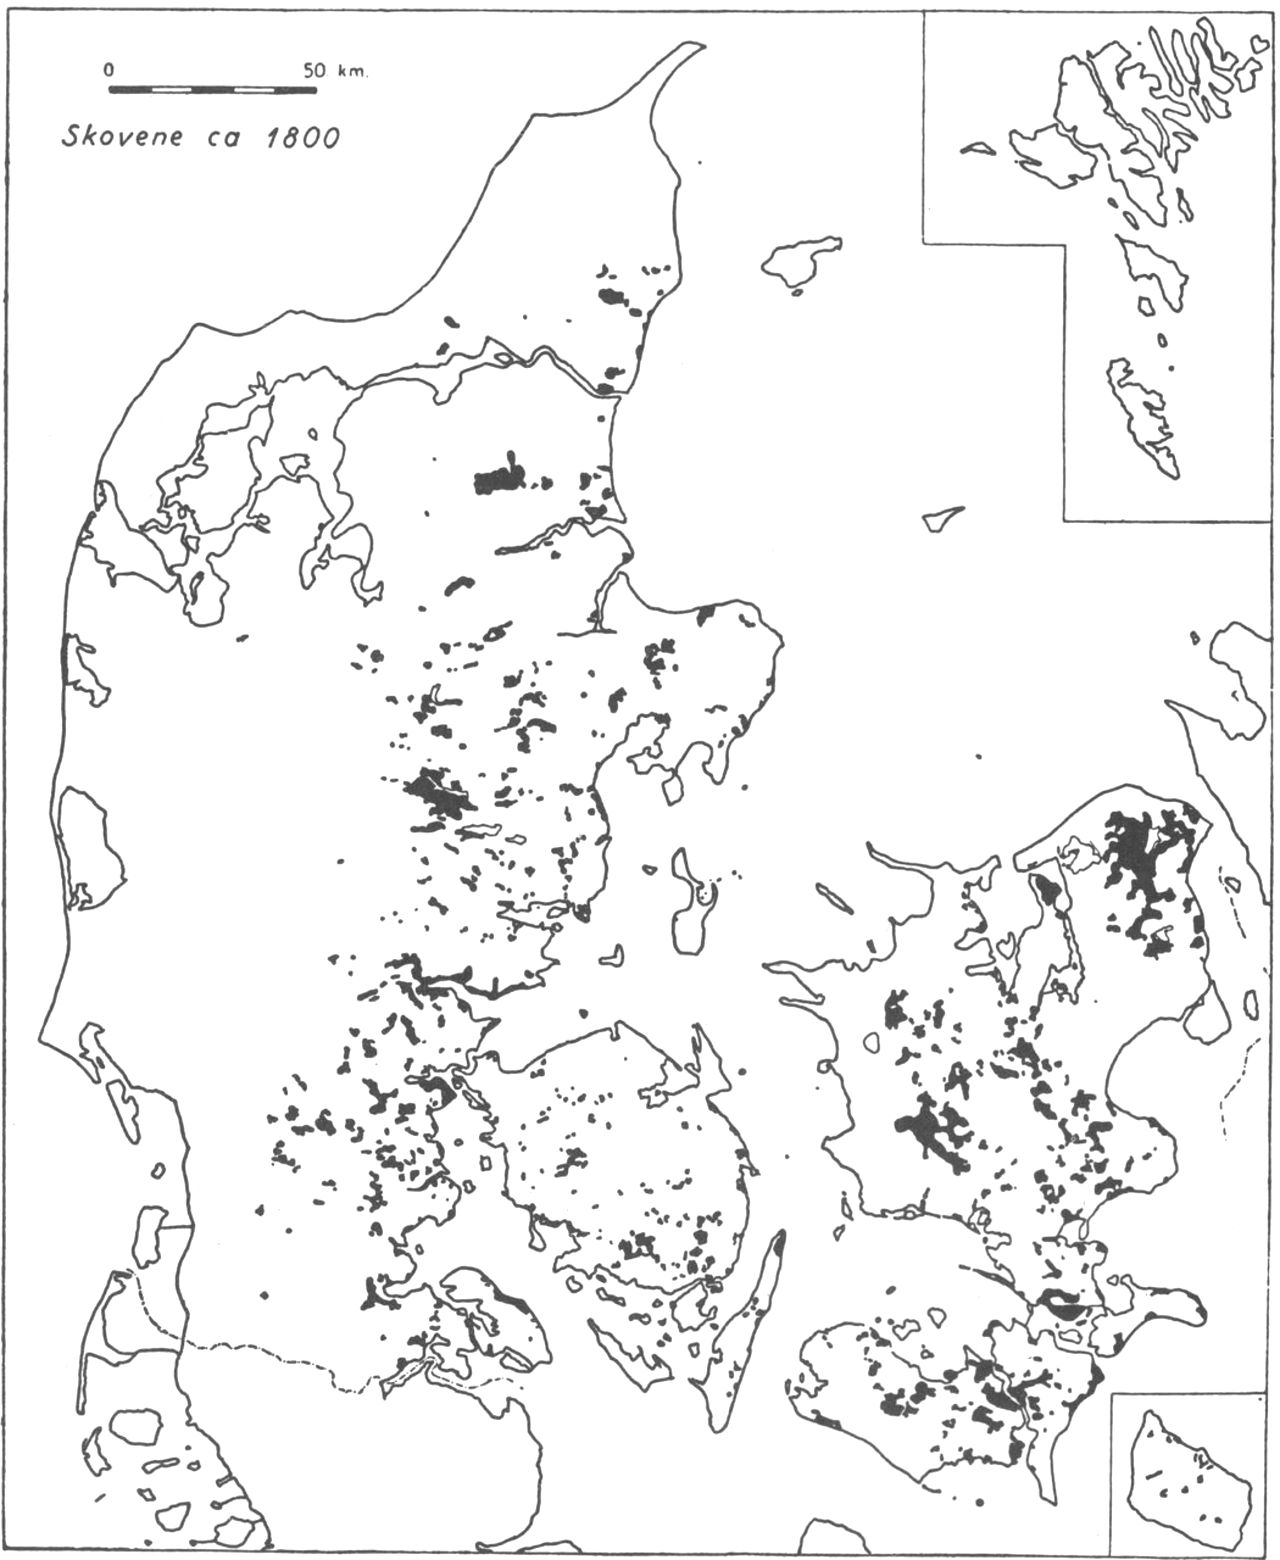 (Kort). Skovene ca. 1800.Udbredelsen er lokaliseret til landets østlige dele. Det er de unge morænelandskabers bakkede sandjordsområder fx. Nordsjælland, Himmerland, Silkeborg-egnen, tunneldalenes stejlskrænter fx. ved Vejle fjord og morænefladernes lave fugtige dele fx. på Lolland, der er skovdækket. Det samlede skovareal er ca. 4%, altså mindre end halvdelen af nutidens.Københavns Universitets Geografiske Laboratorium del.